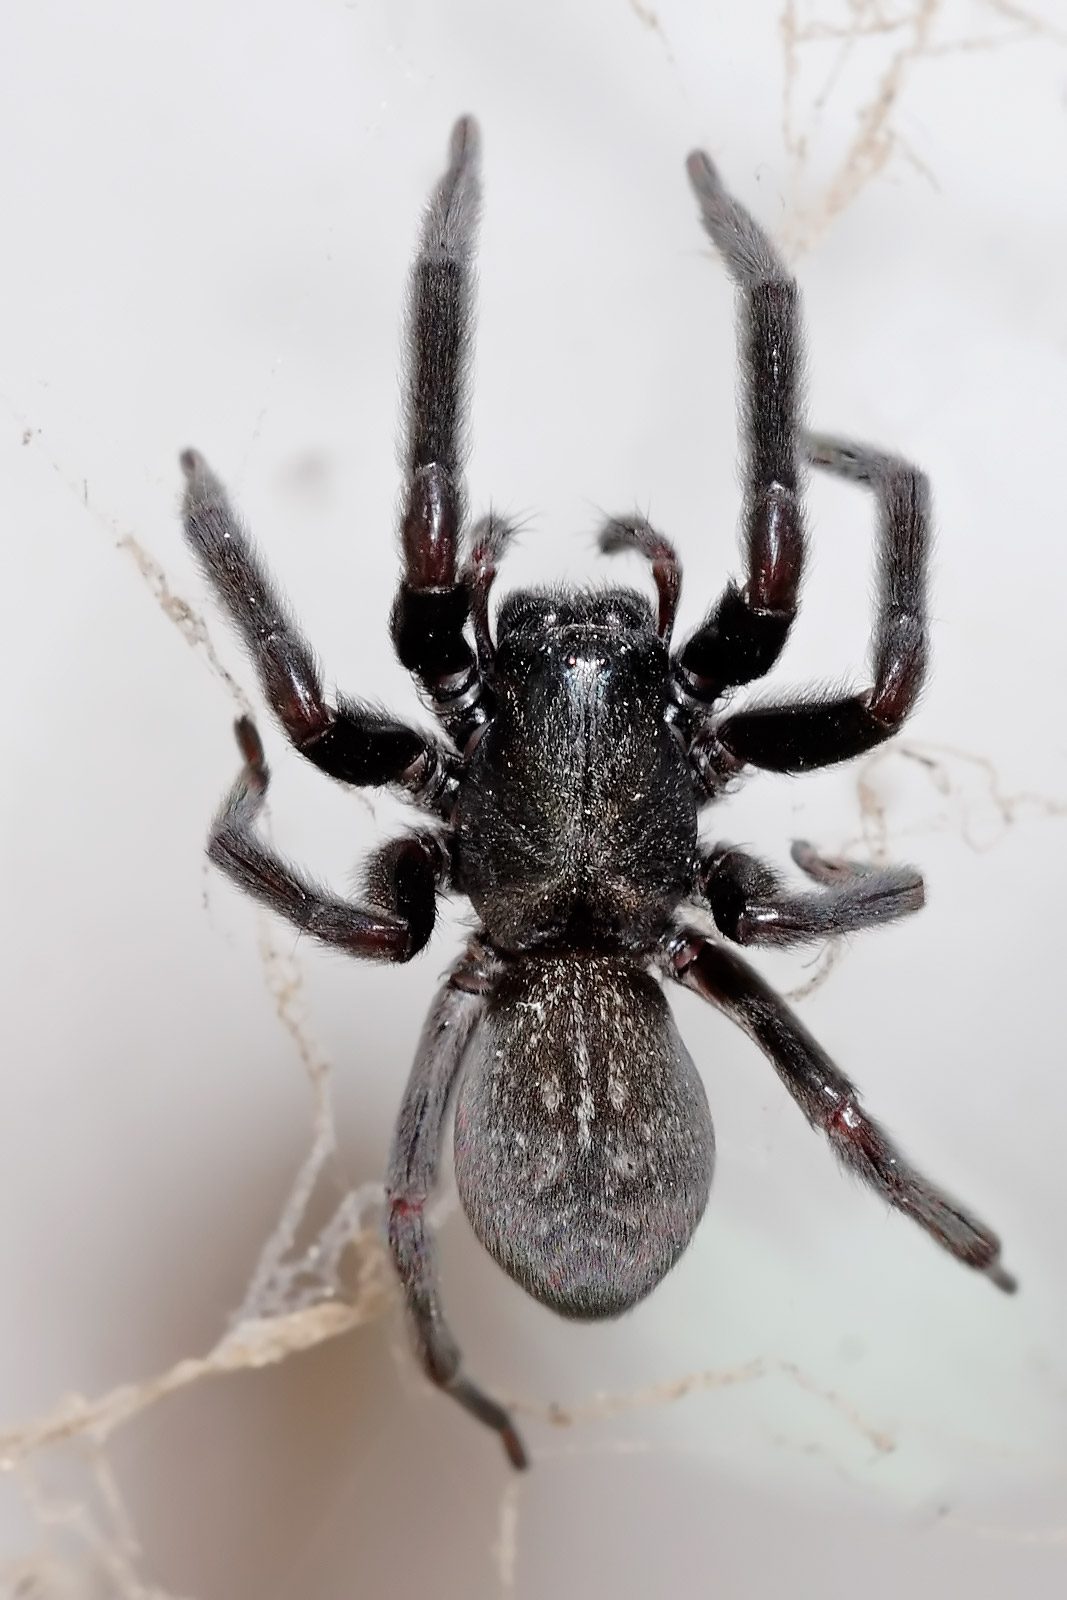 Female Black House Spider In Australia